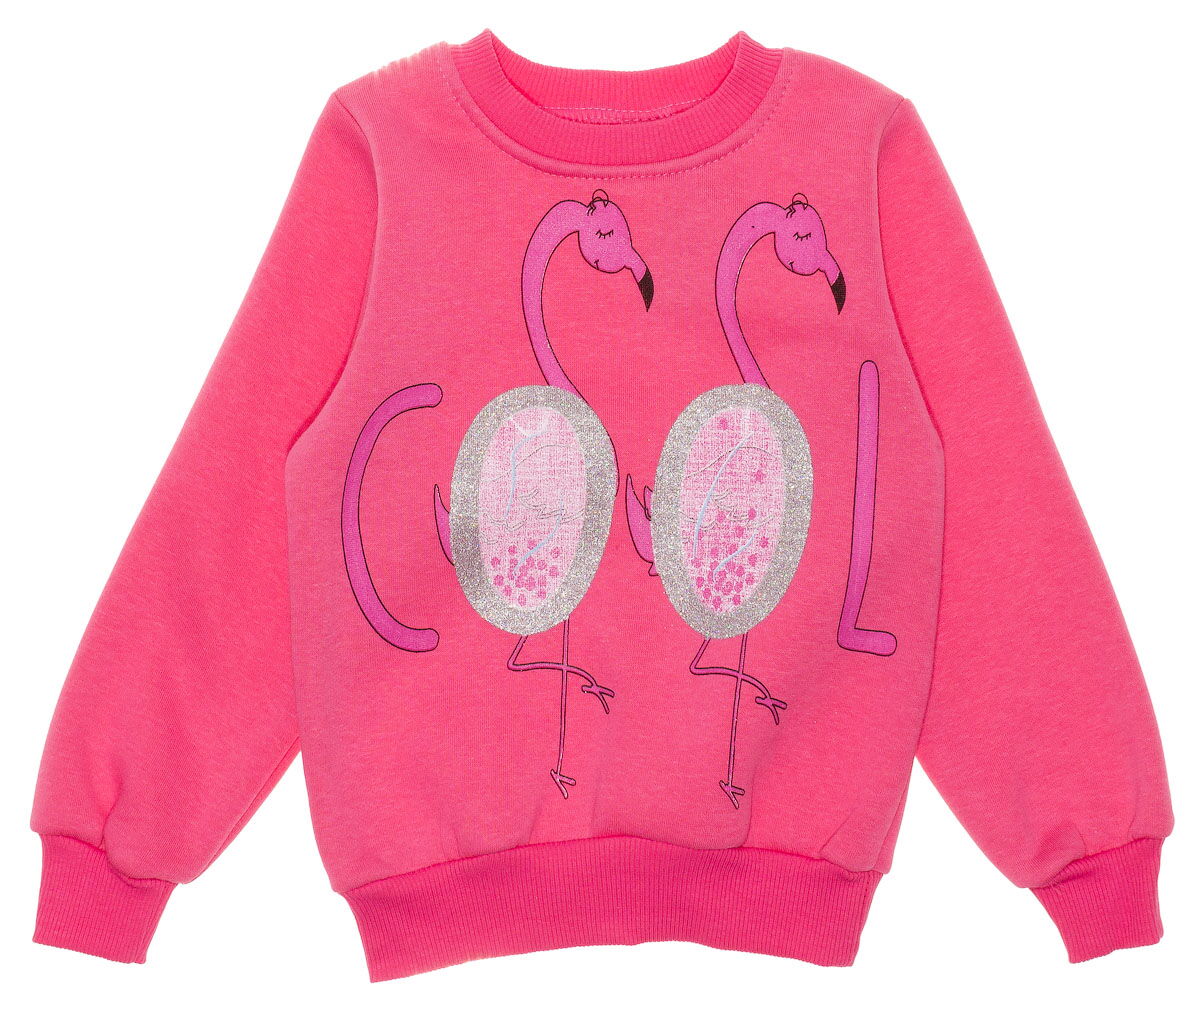 Утепленный костюмчик для девочки Benna Фламинго розовый 587 - размеры